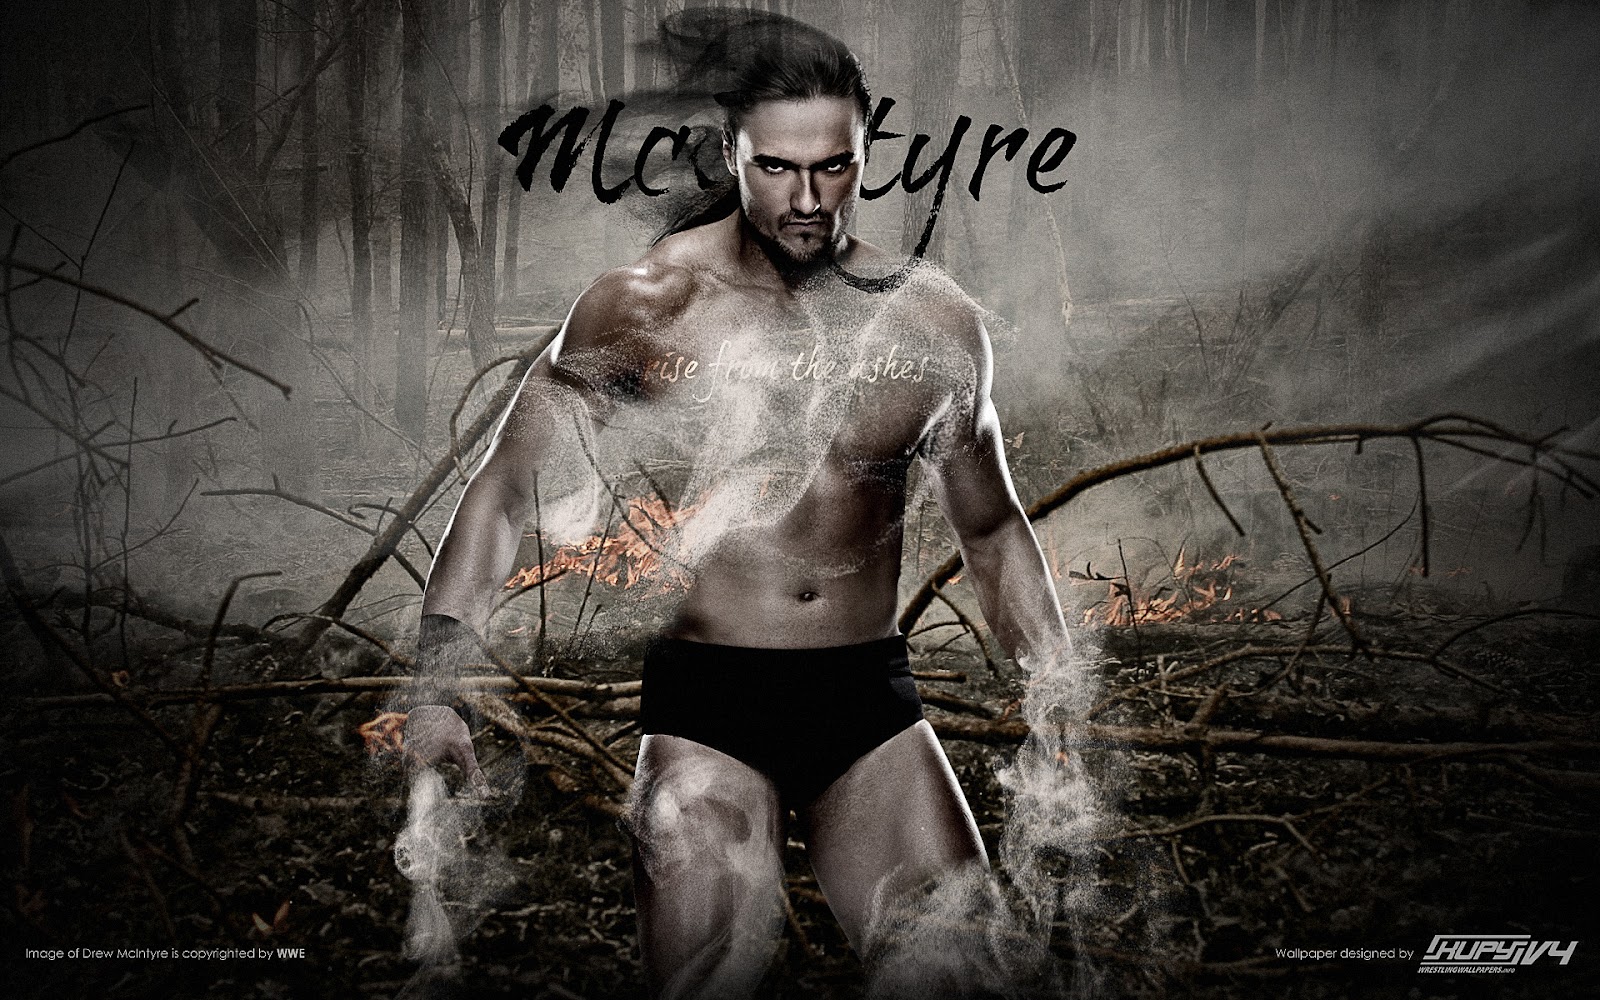 wwe Drew McIntyre | Drew McIntyre wrestler | Drew McIntyre wallpapers ...